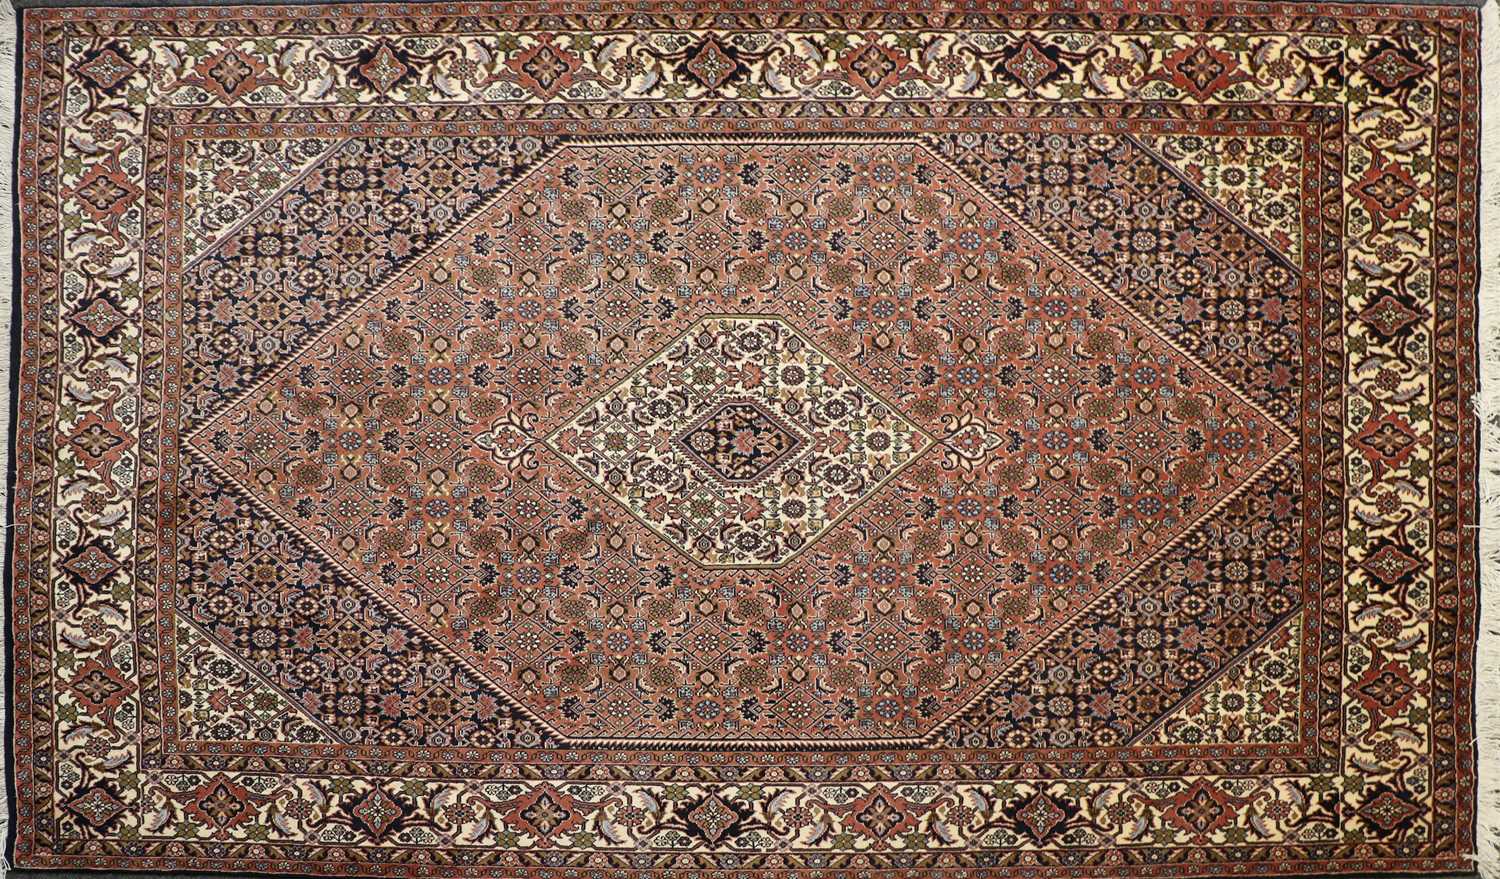 Lot 181 - A modern Iranian woollen rug